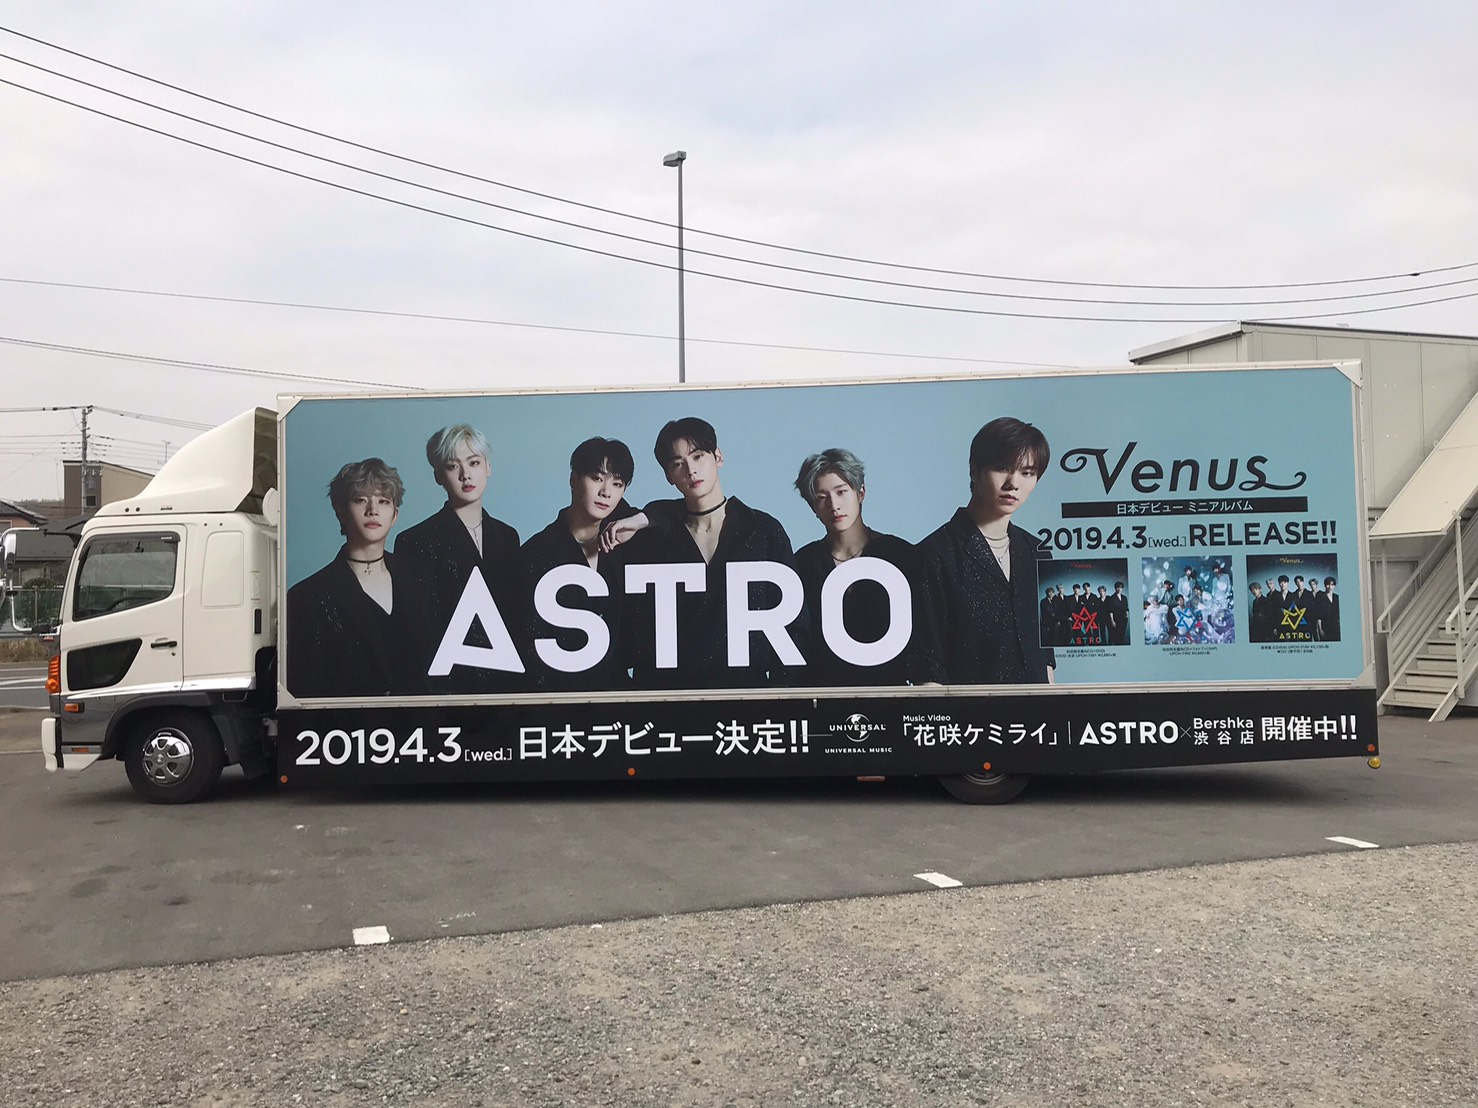 ASTRO Japan Dubut mini Album  アストロ